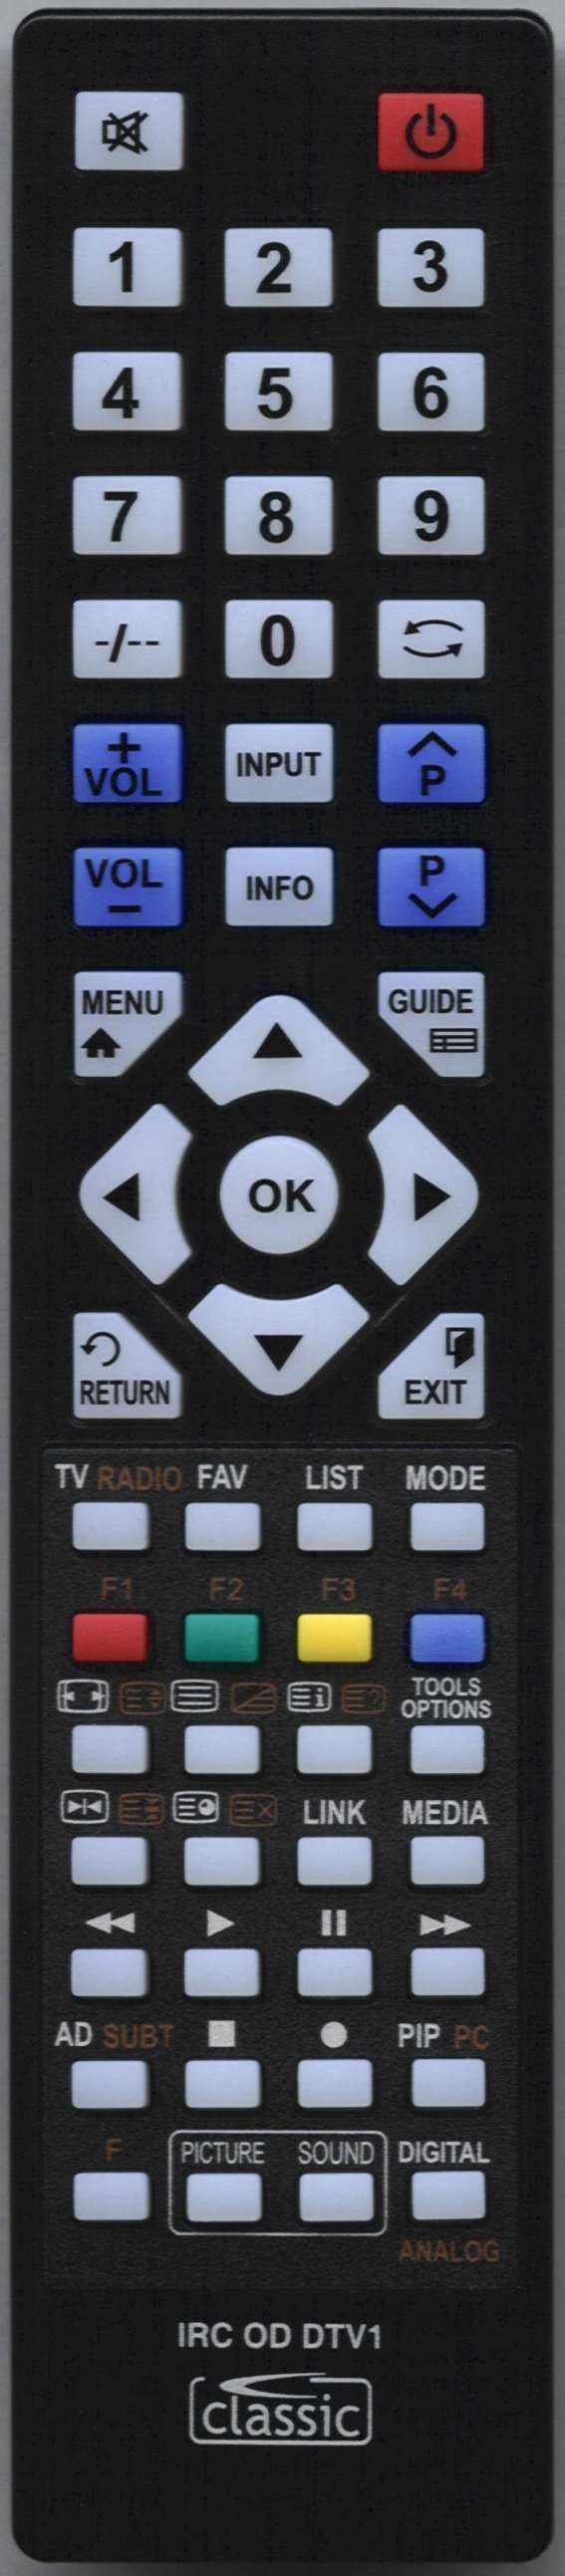 LUXOR 10121395 Remote Control Alternative